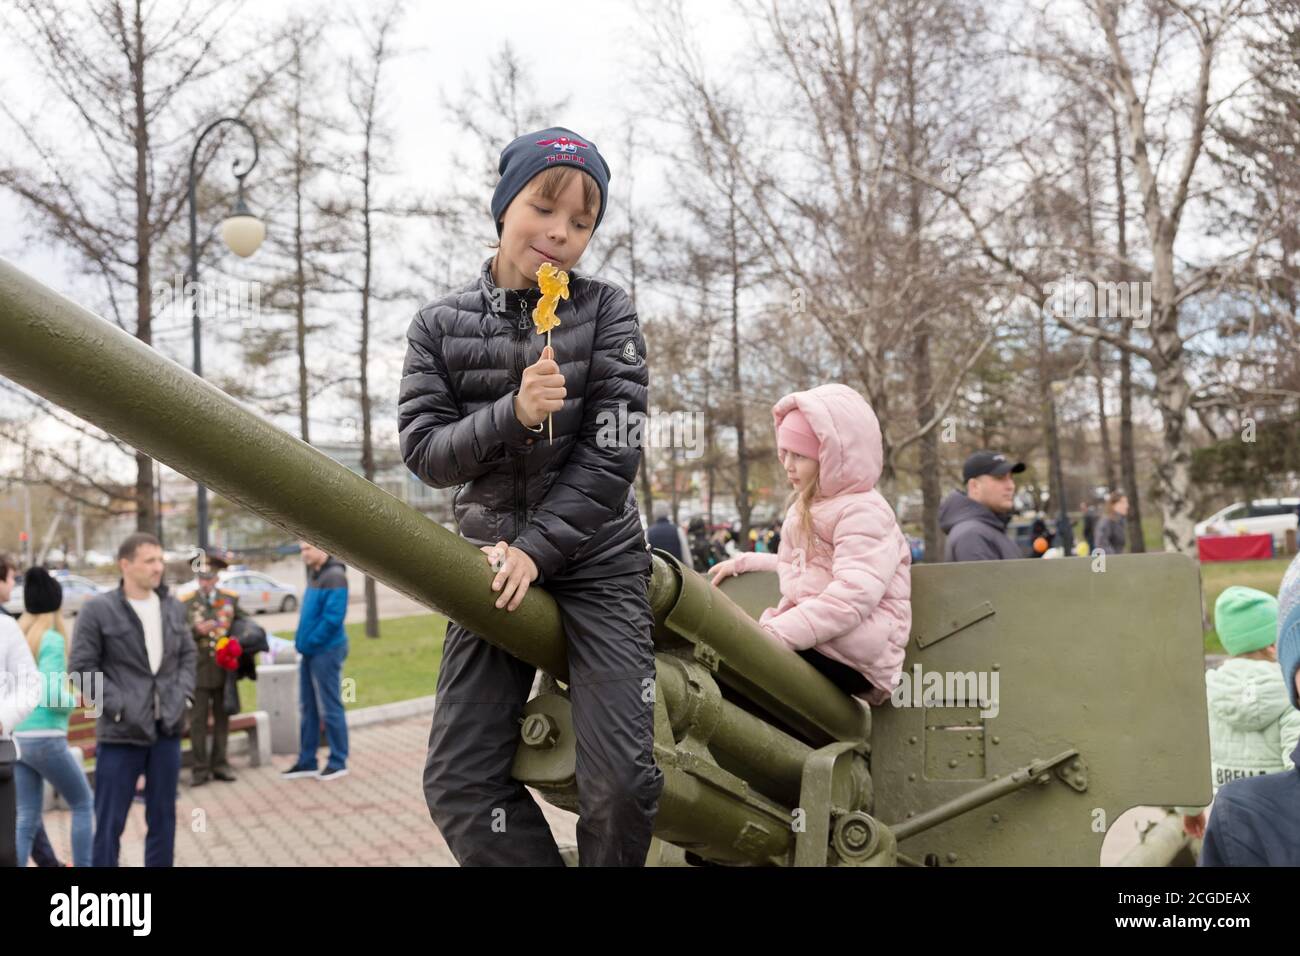 Il ragazzo è seduto sulla pistola di artiglieria antiaerea, che si trova vicino al museo del Victory Memorial durante la celebrazione del giorno della vittoria della seconda guerra mondiale. Foto Stock